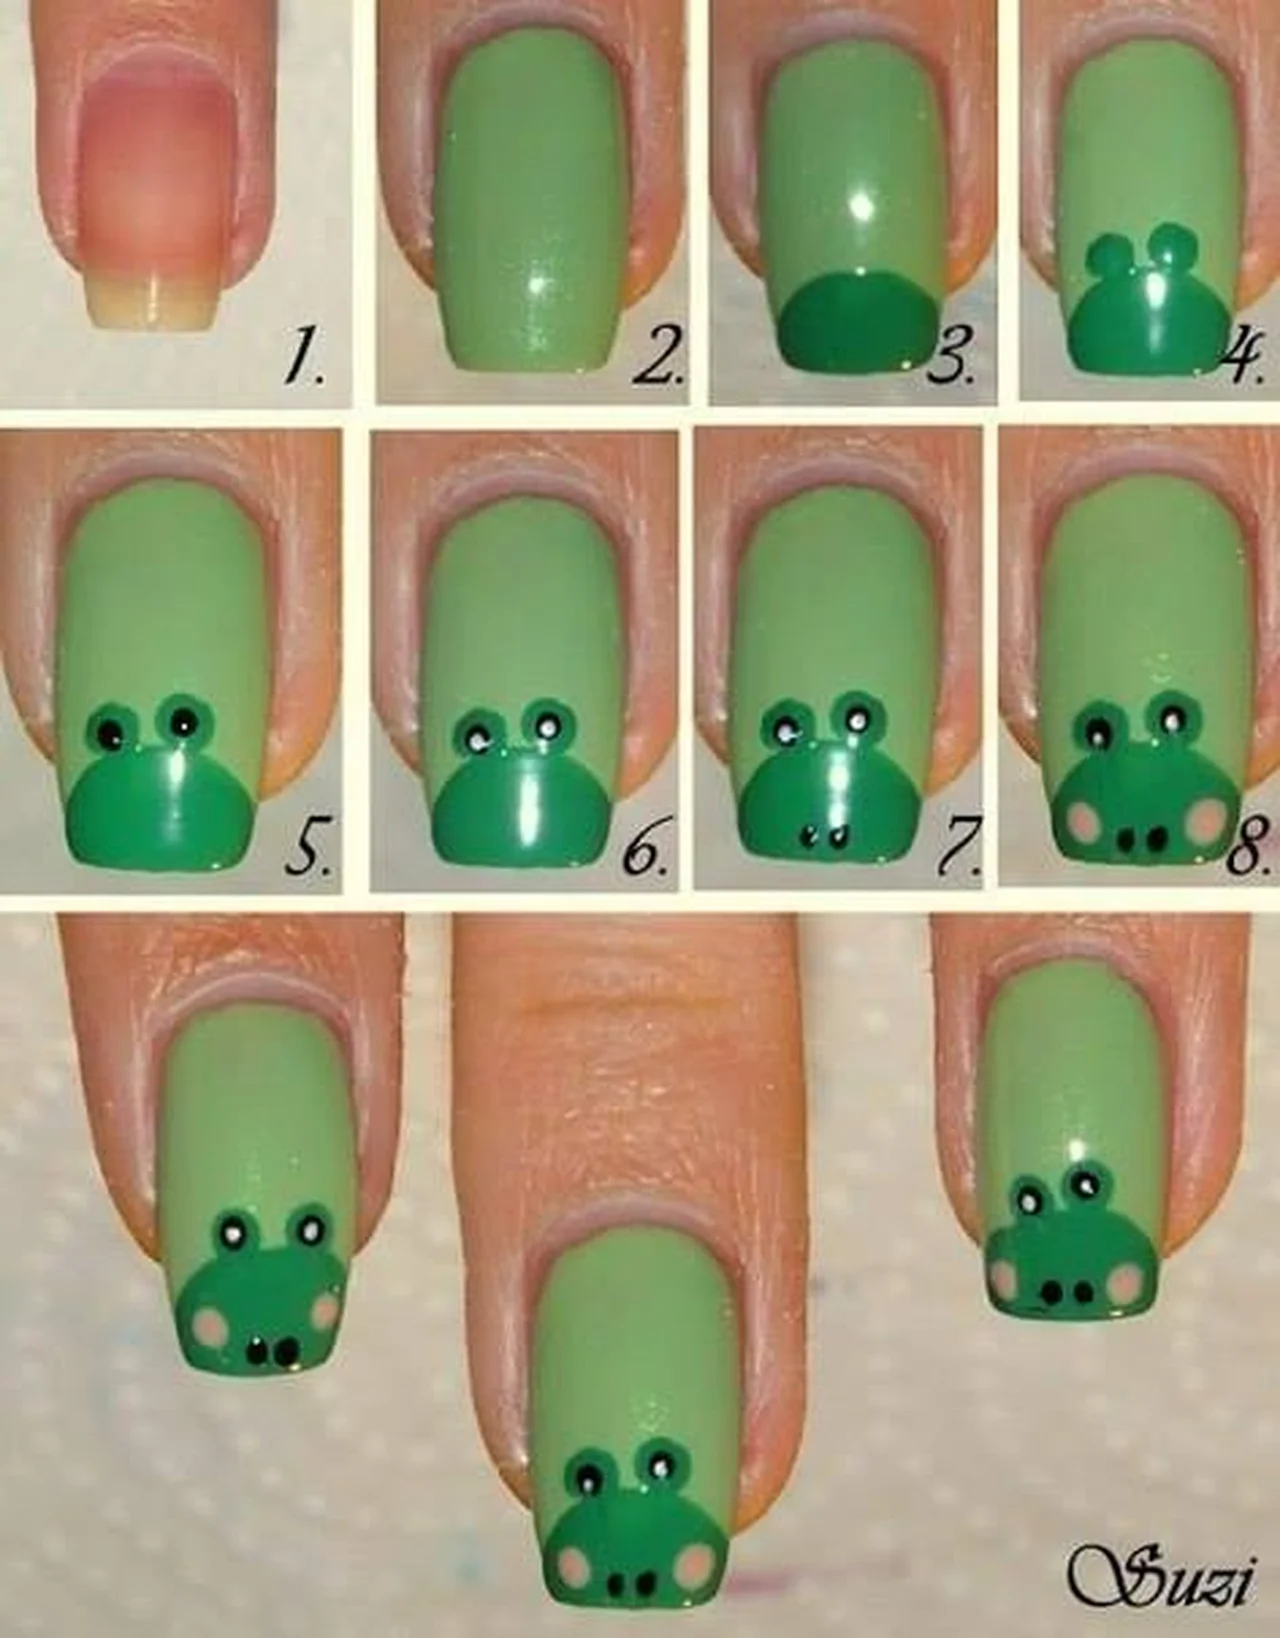 Żabki na paznokciach :)